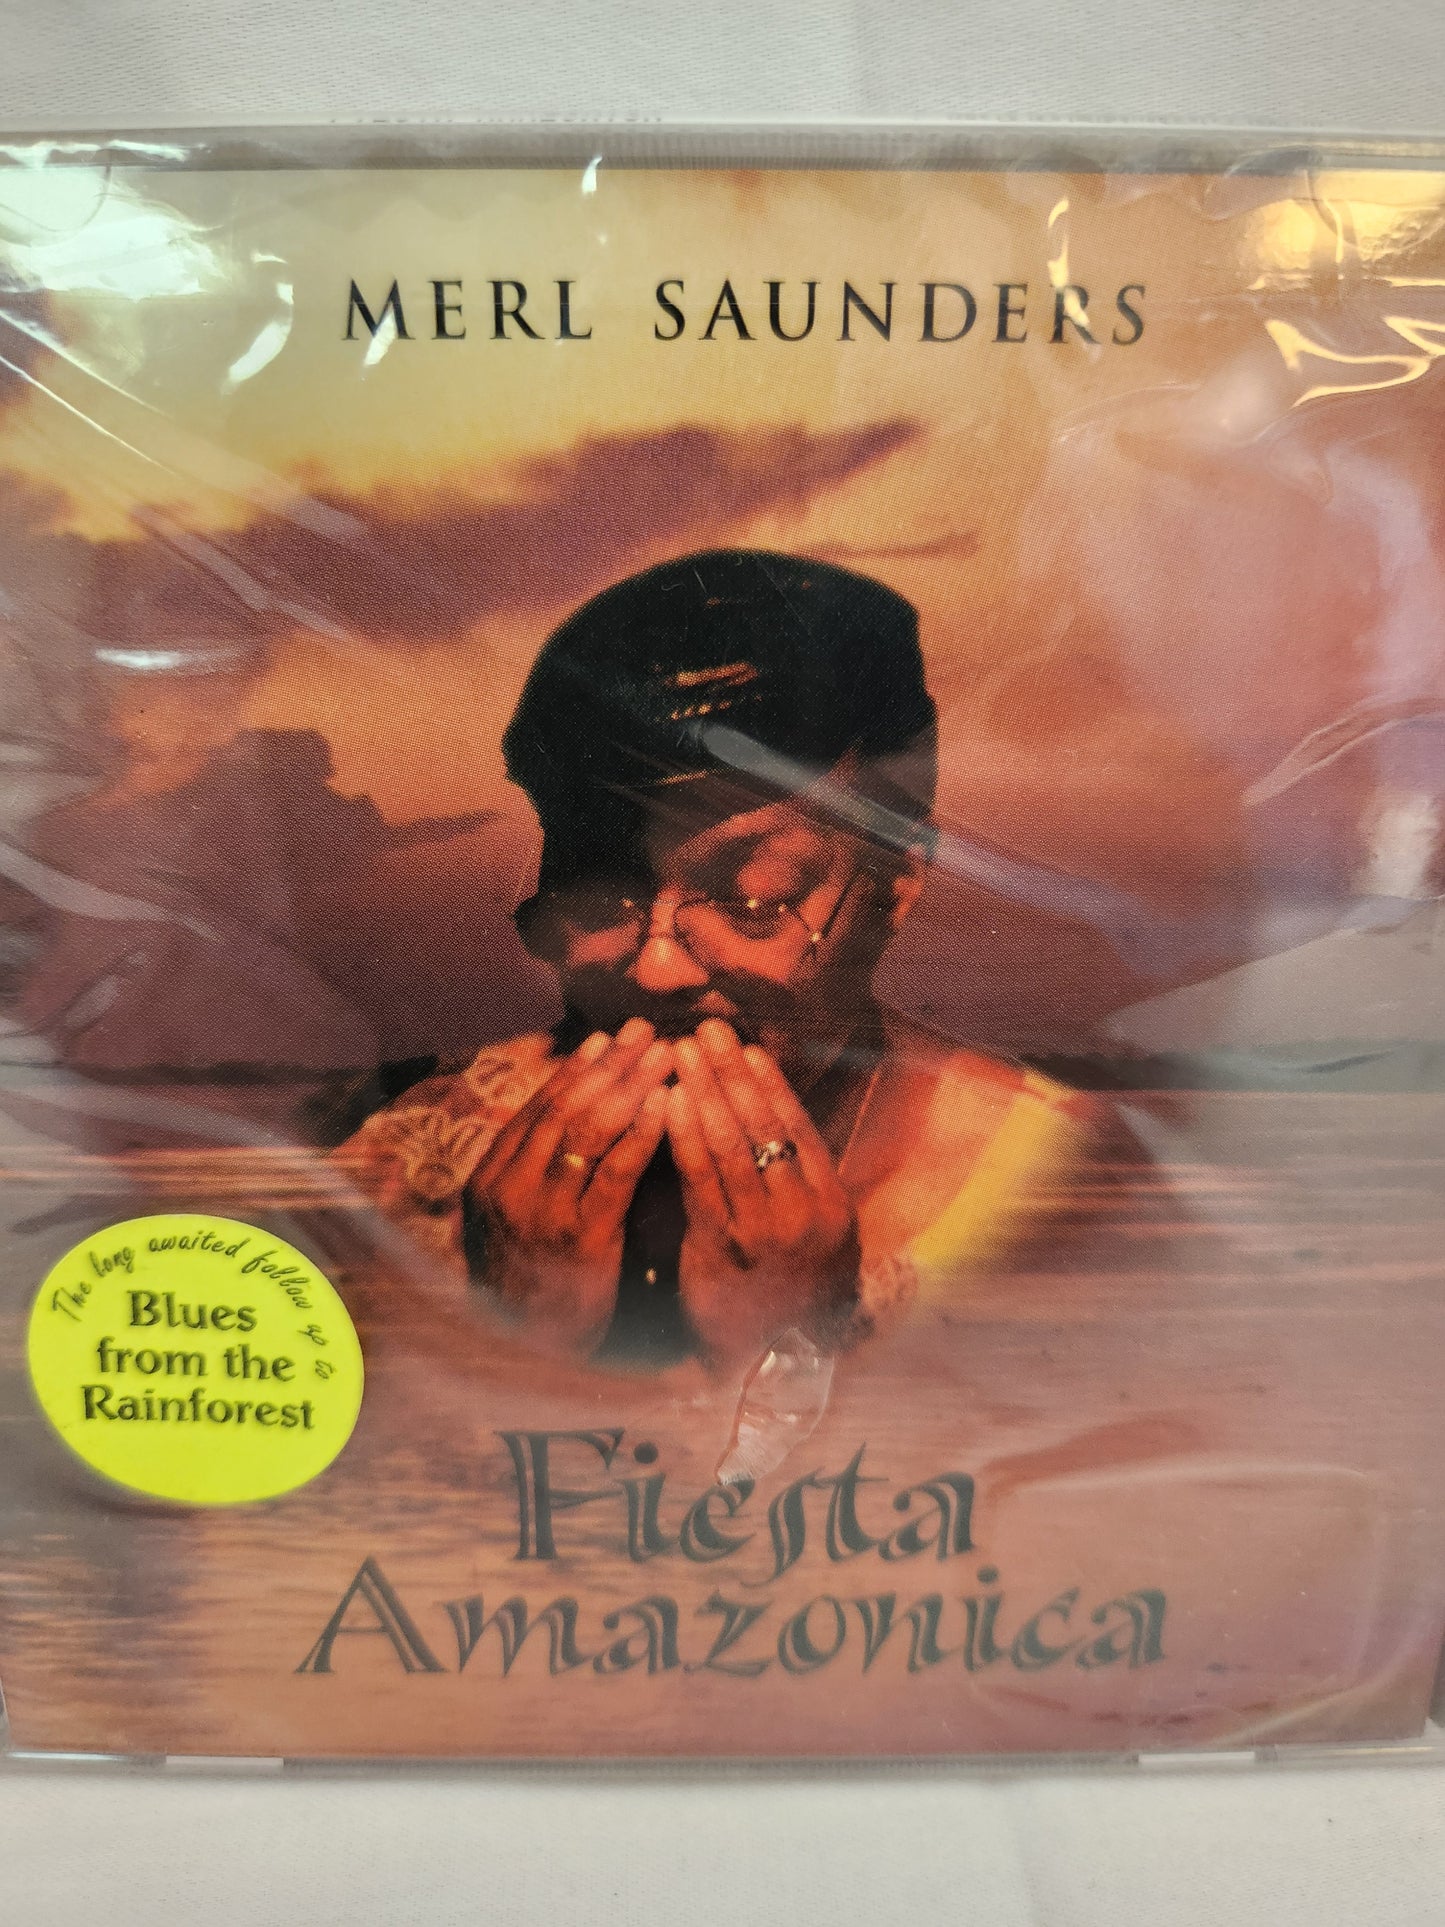 1997 - Merl Saunders: Fiesta Amazonica CD